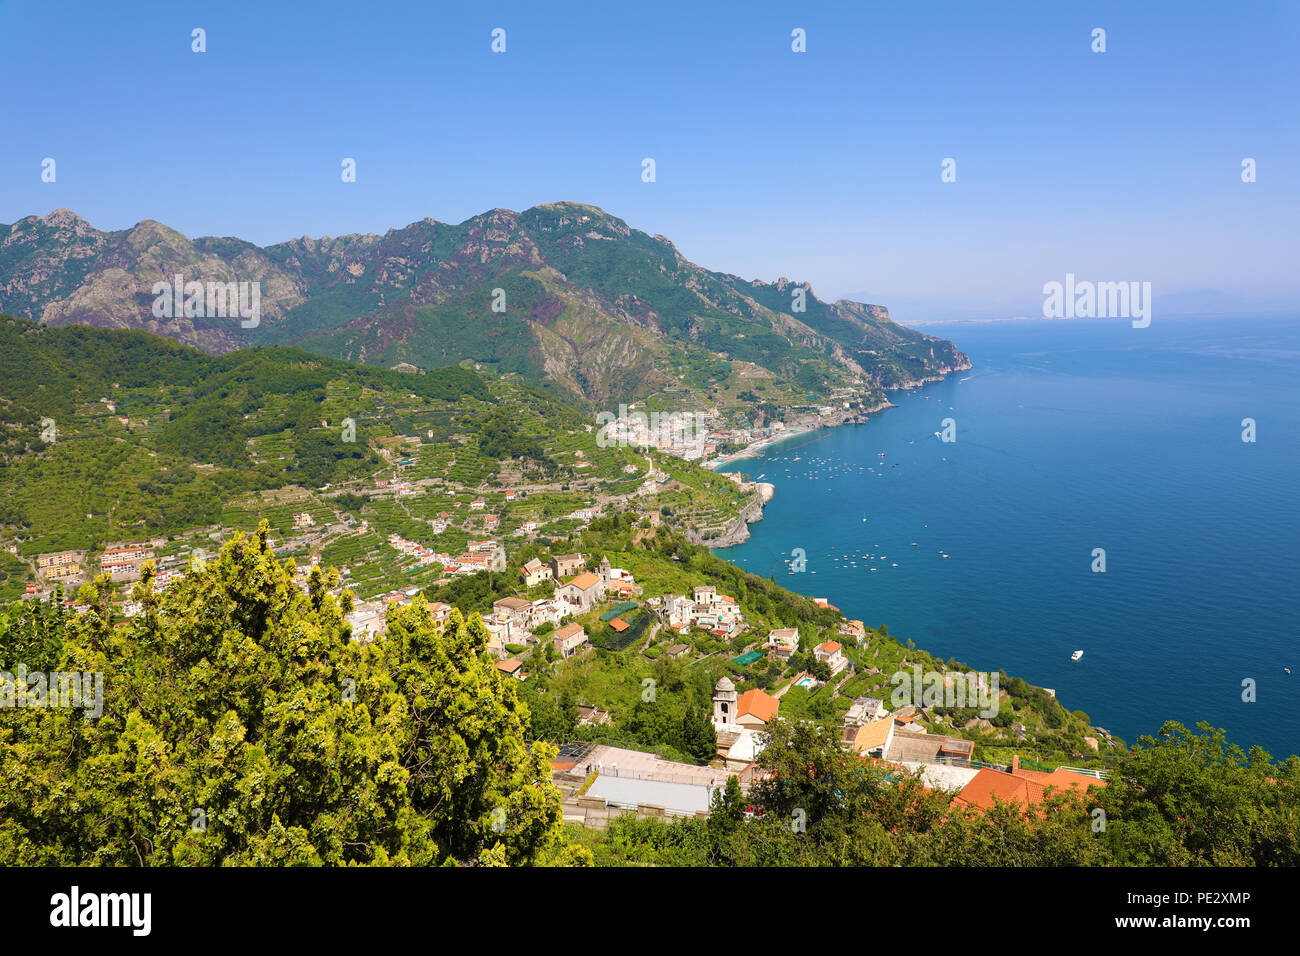 Belle vue sur la côte amalfitaine de la Villa Cimbrone, Ravello, Italie Banque D'Images